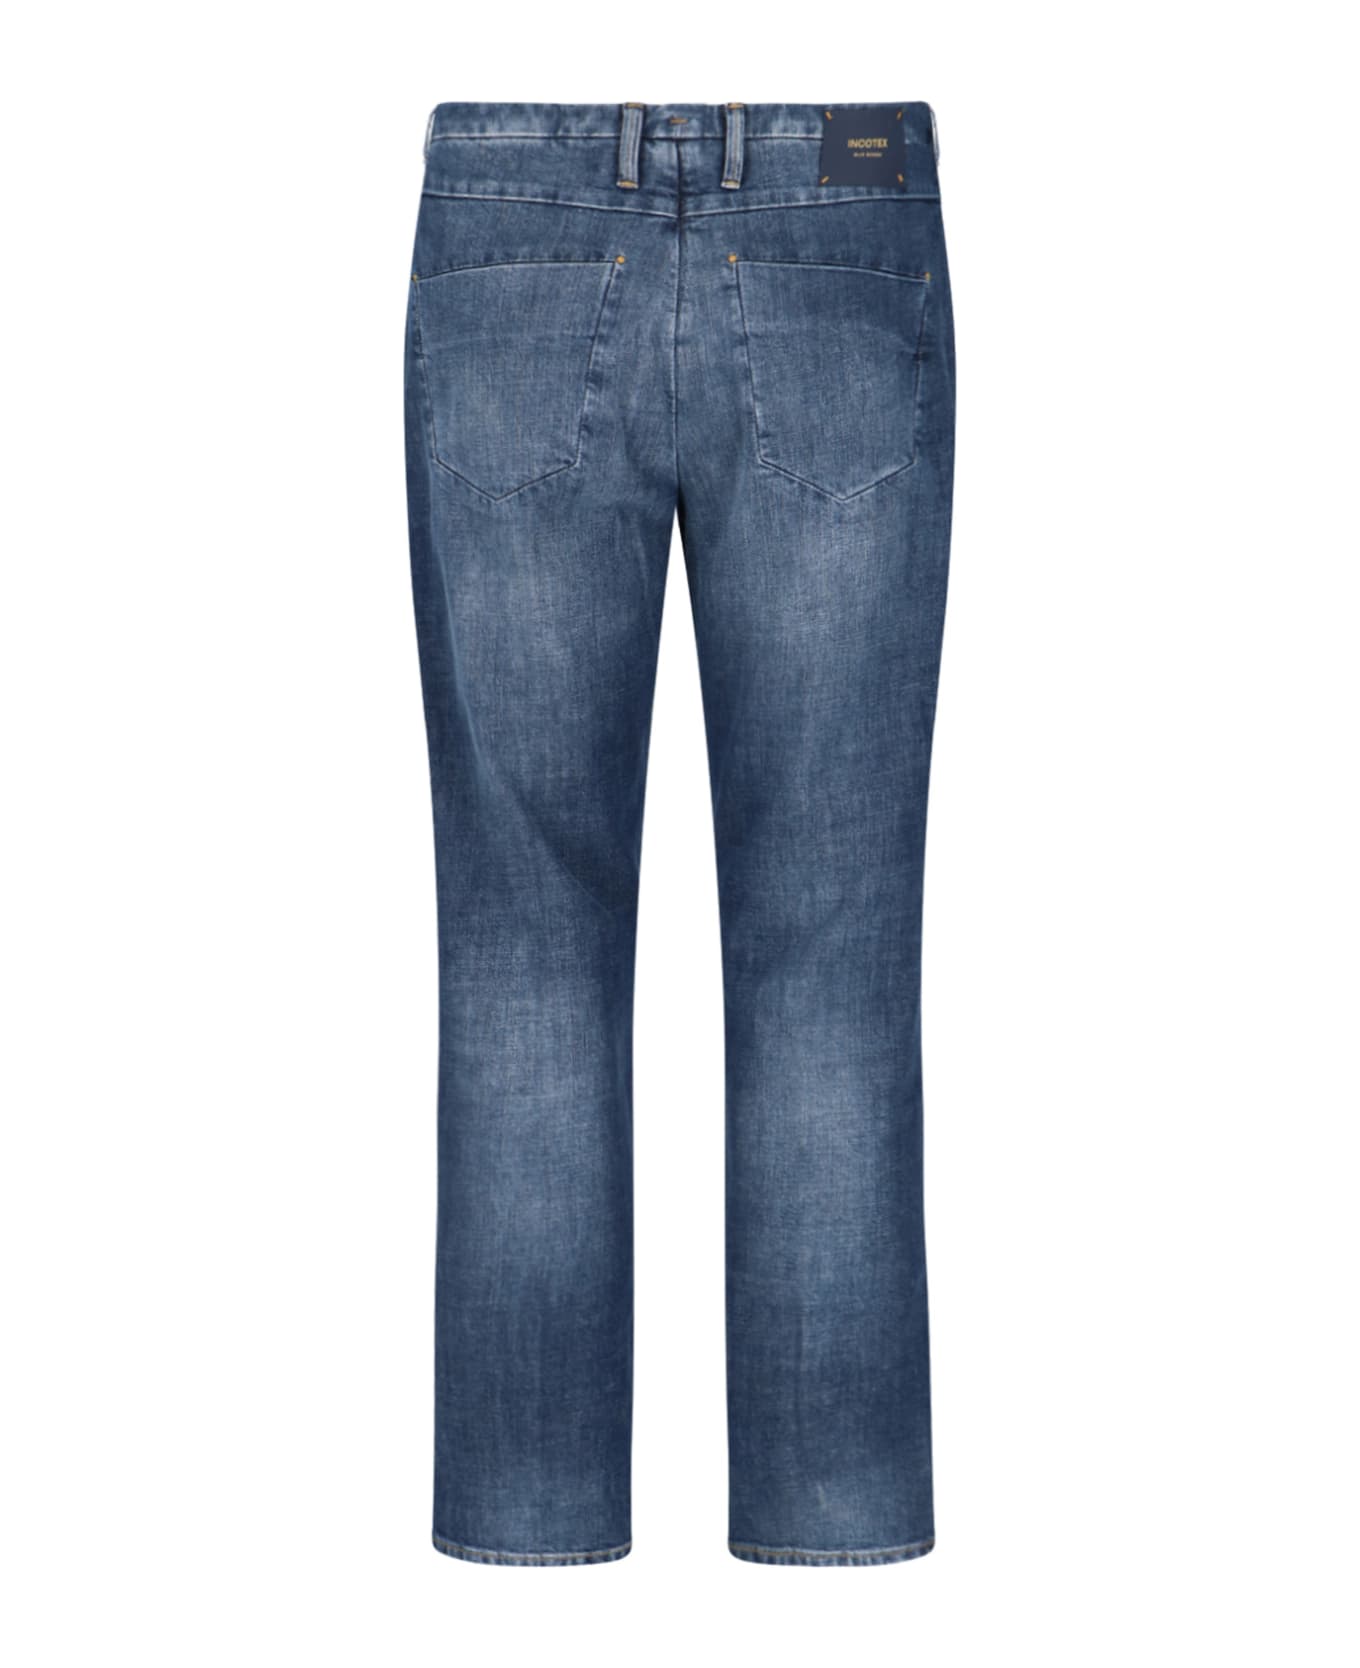 Incotex Blue Division Jeans - Blue